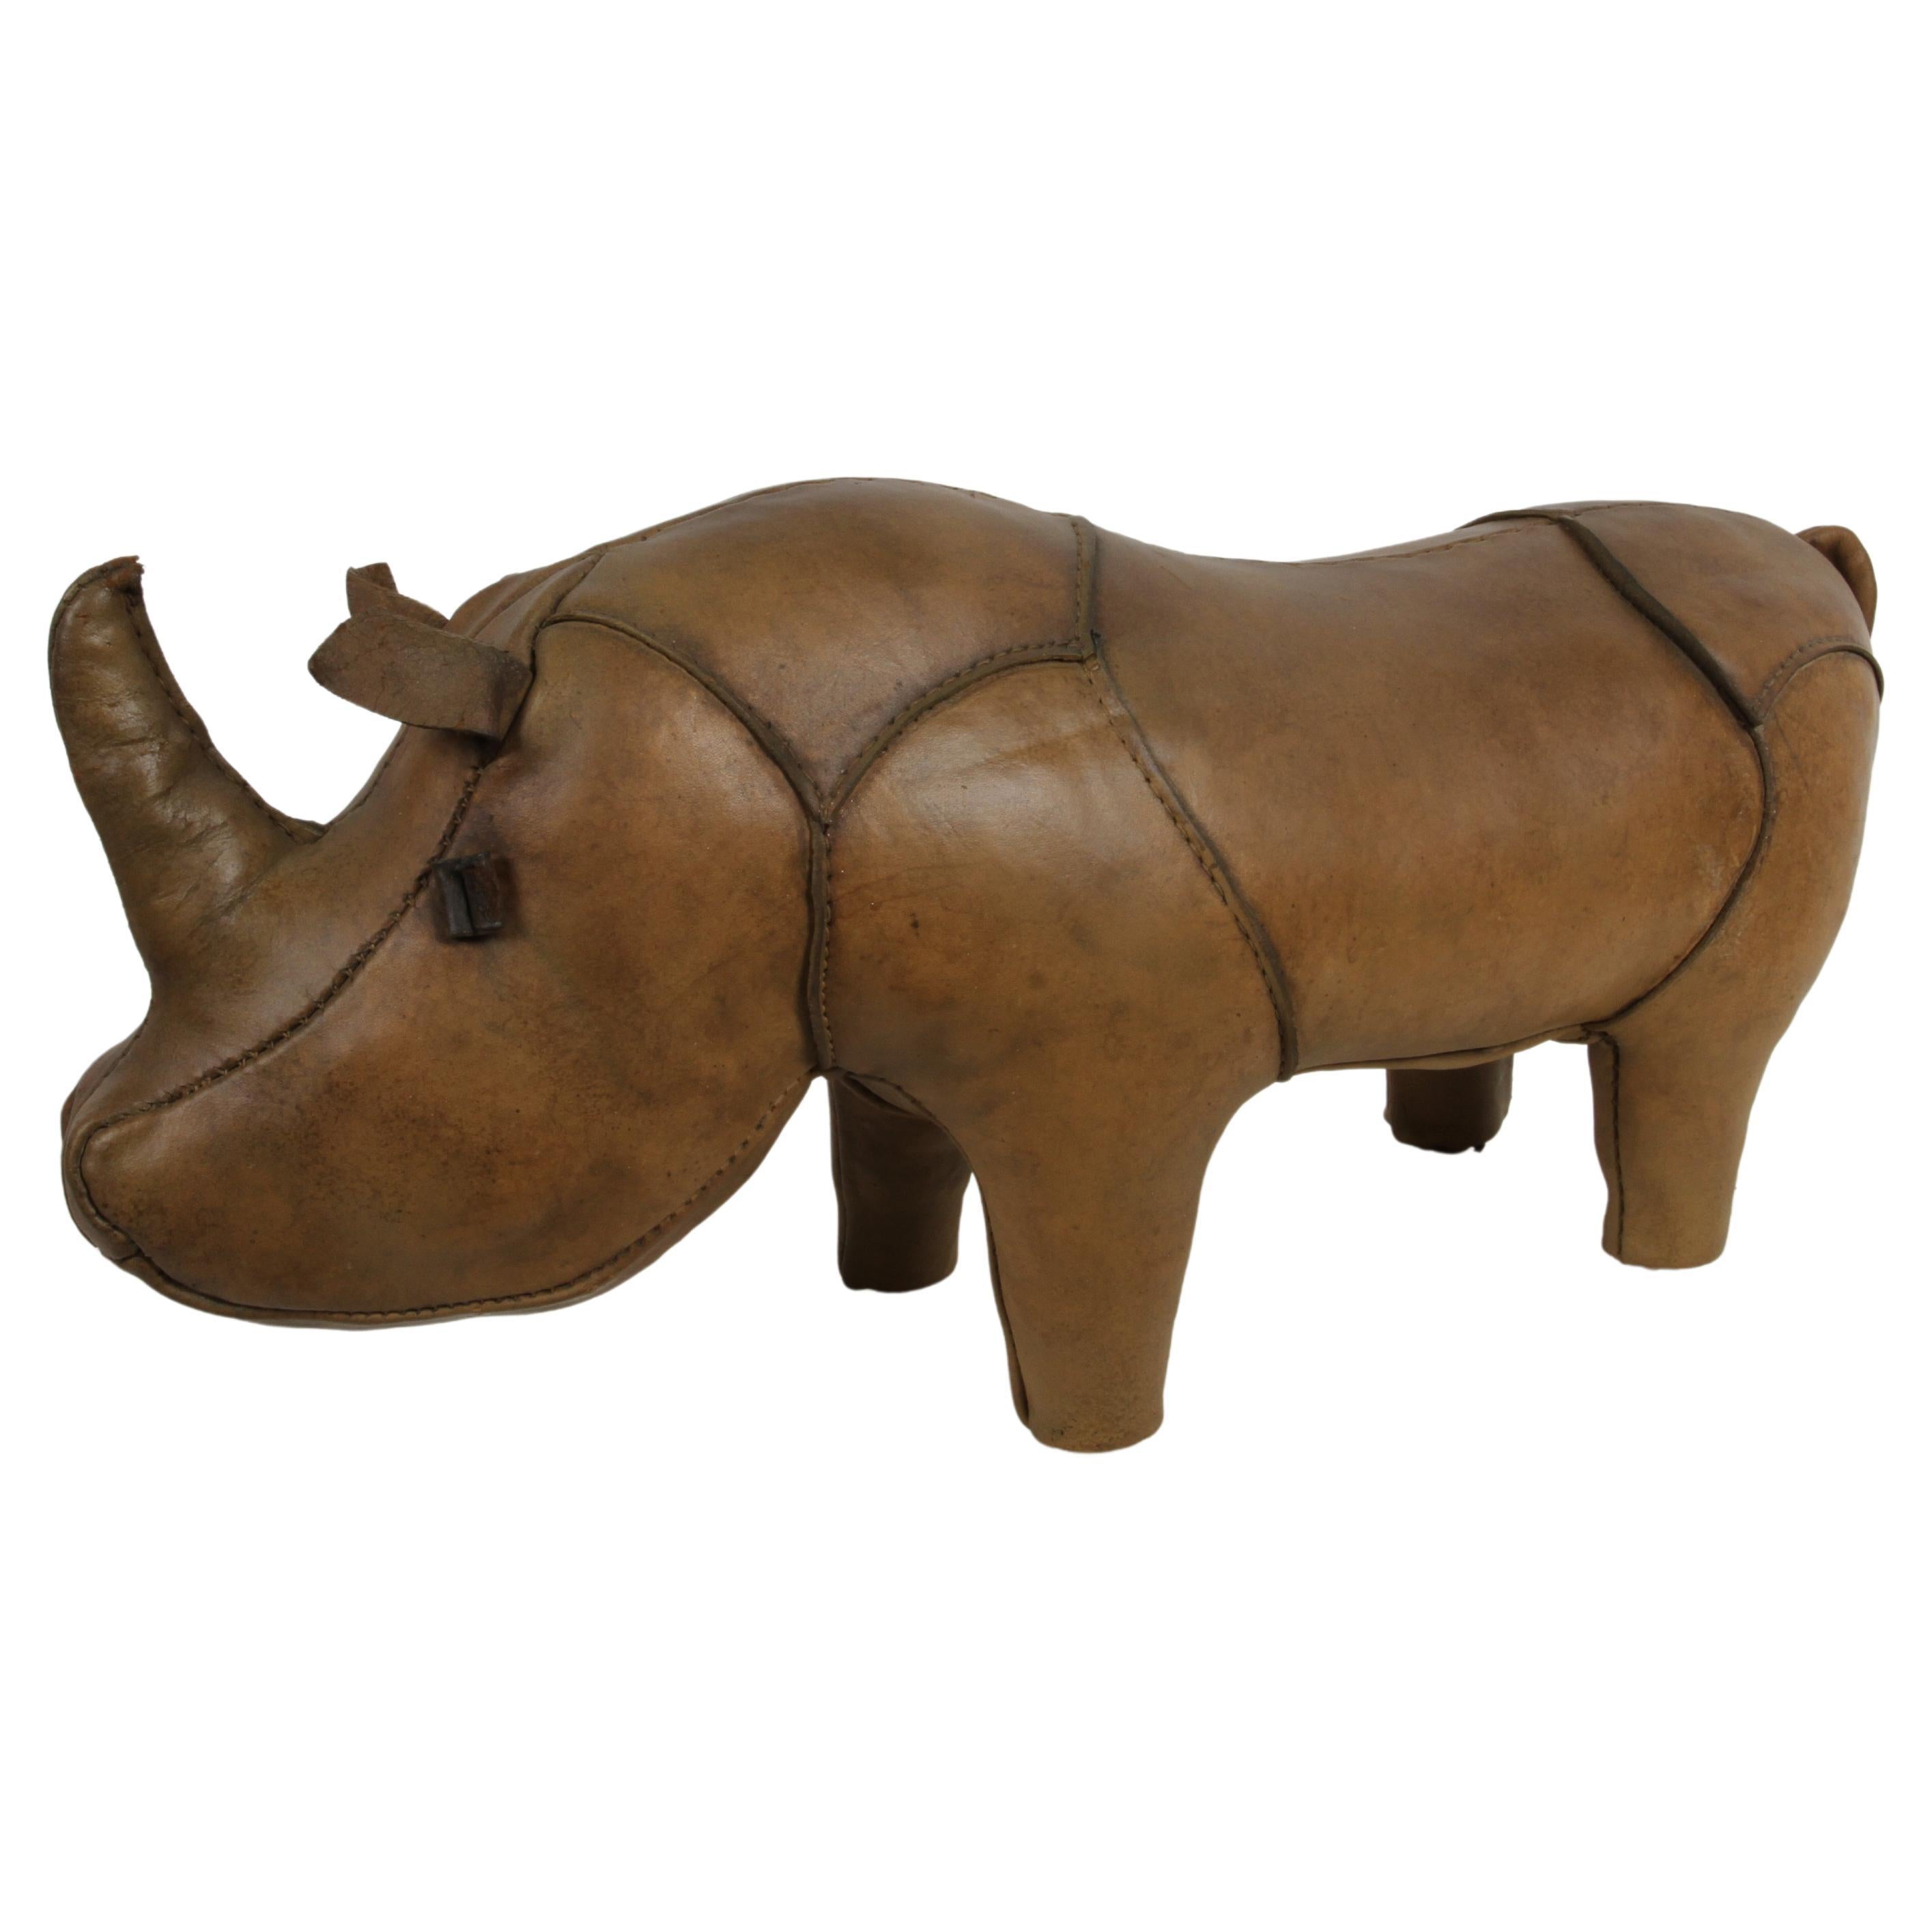 Dimitri Omersa en cuir Rhino vendu par Abercrombie & Fitch, restauré, années 1960